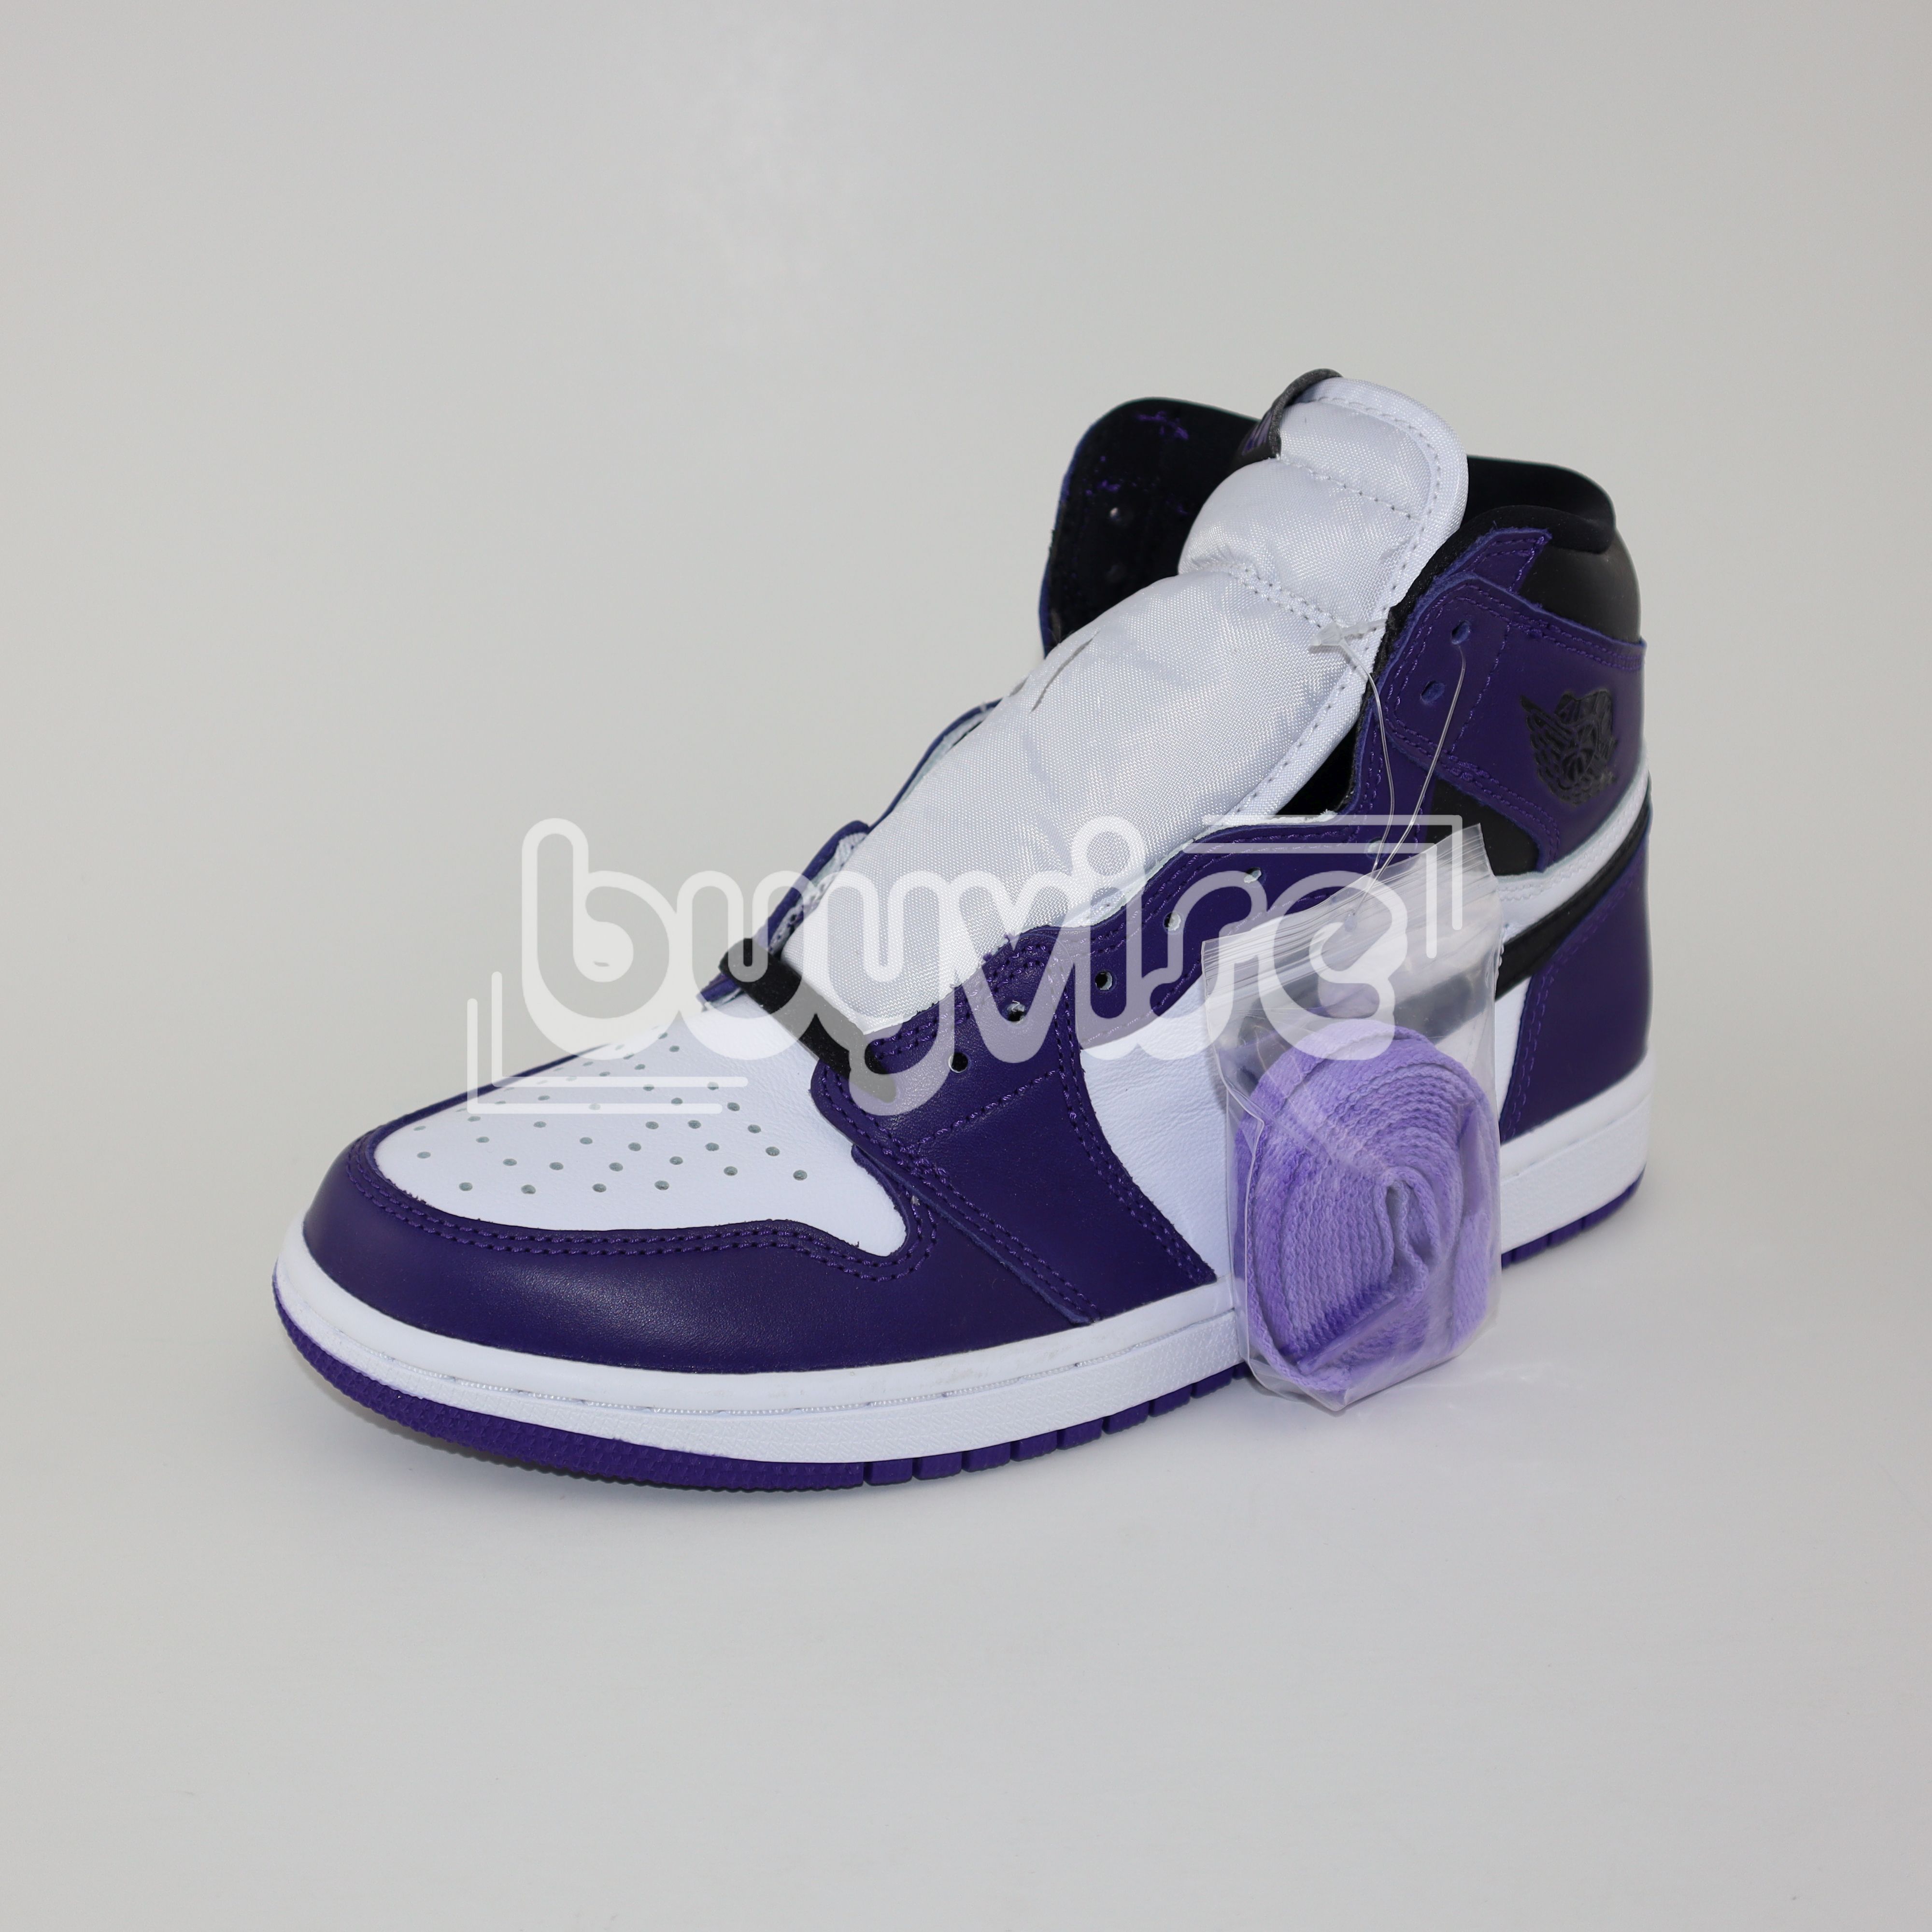 Air Jordan 1 Retro High Court Purple 2.0 555088-500